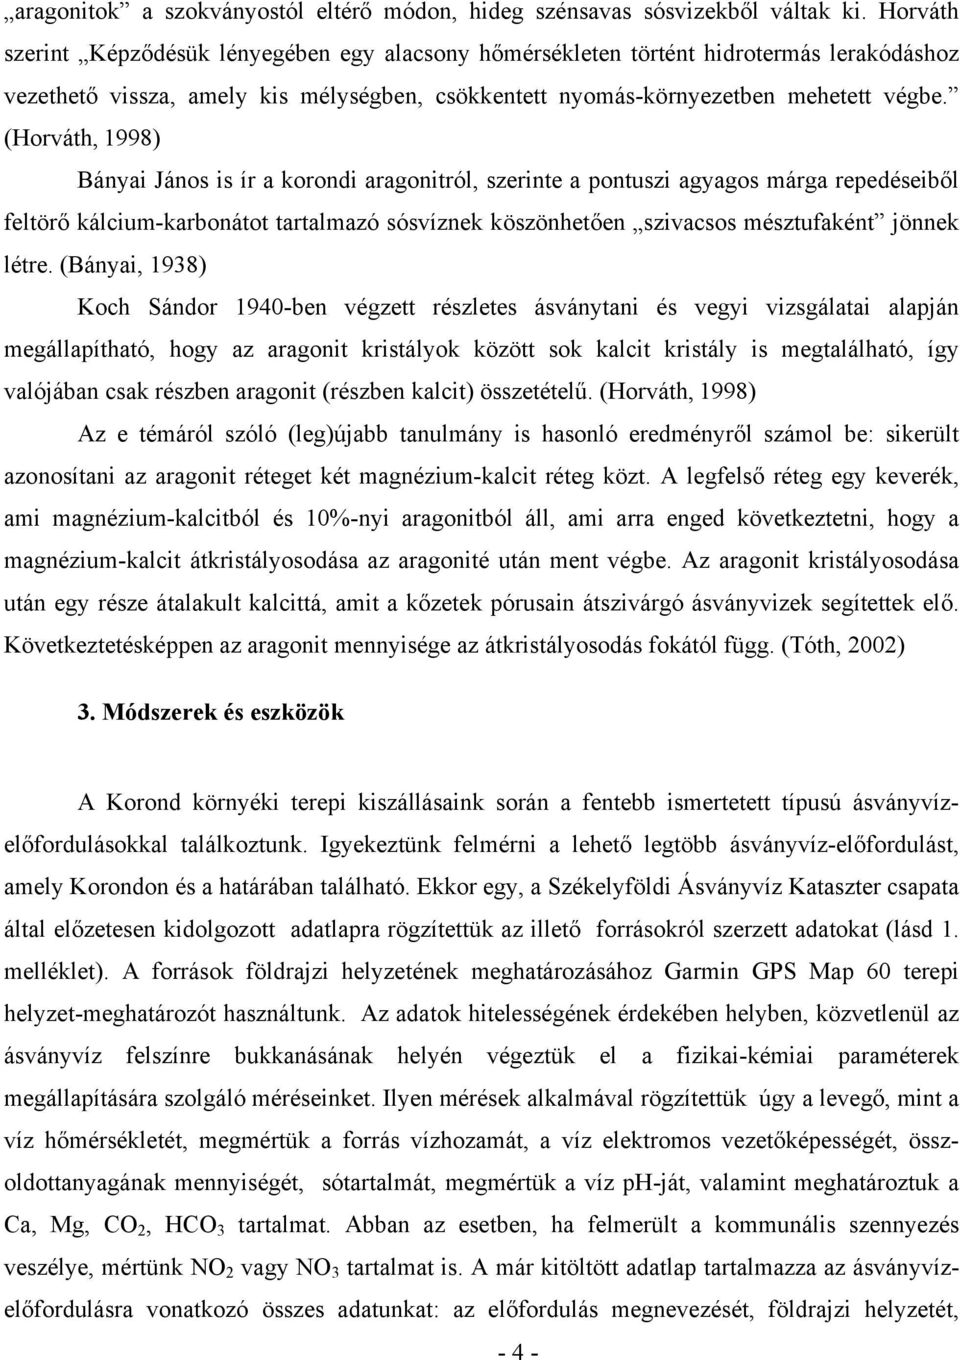 (Horváth, 1998) Bányai János is ír a korondi aragonitról, szerinte a pontuszi agyagos márga repedéseiből feltörő kálcium-karbonátot tartalmazó sósvíznek köszönhetően szivacsos mésztufaként jönnek